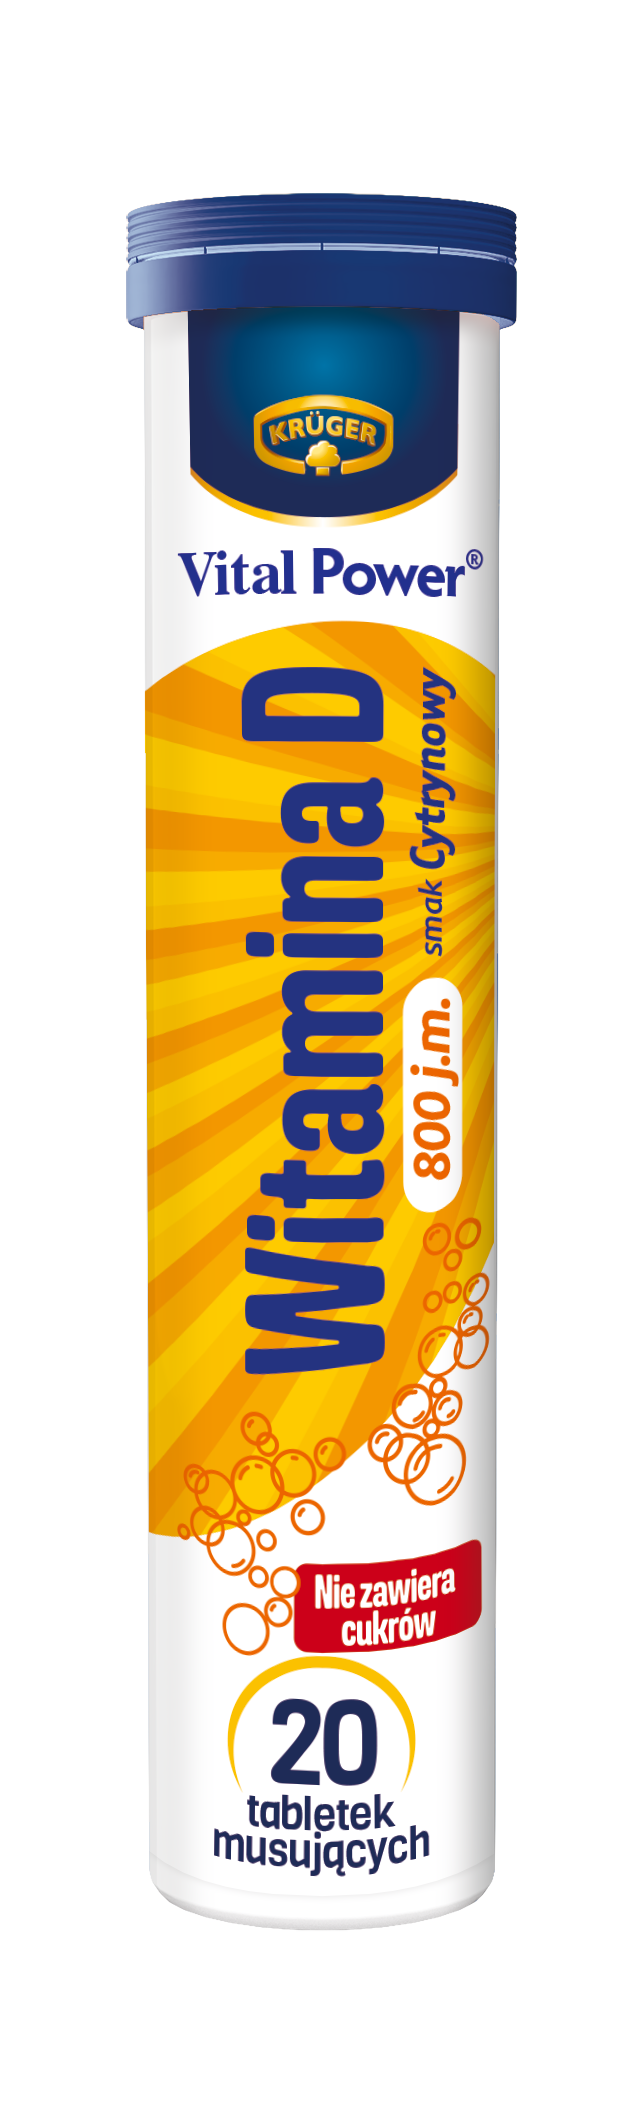 Vital Power Witamina D 800 j.m. Suplement diety. 20 tabletek musujących o smaku cytrynowym.